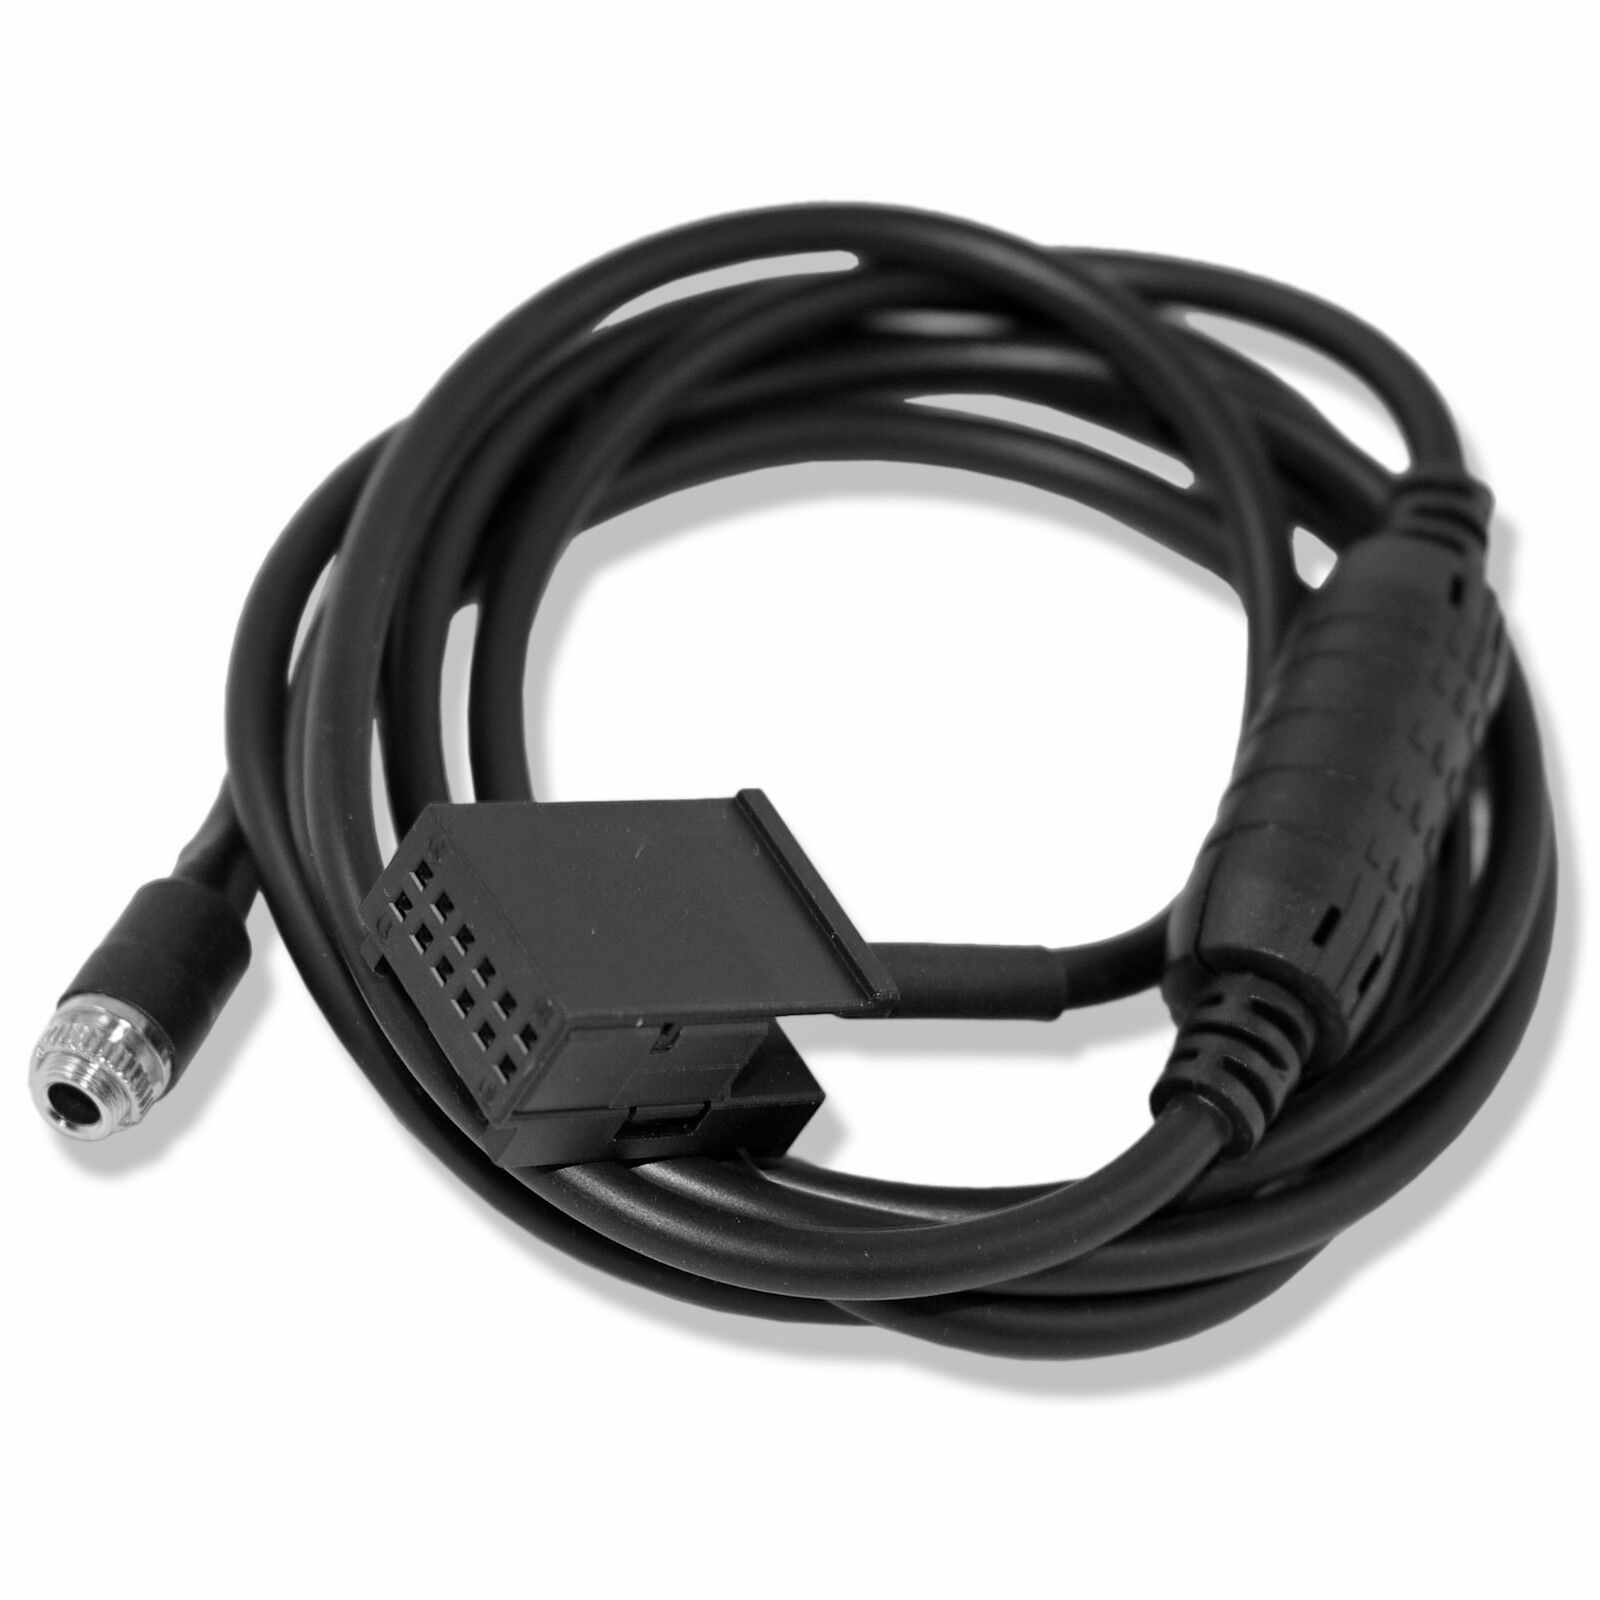 New 3.5MM Female AUX Audio Adapter Cable For BMW Z4 E83 E85 E86 X3 Mini Cooper